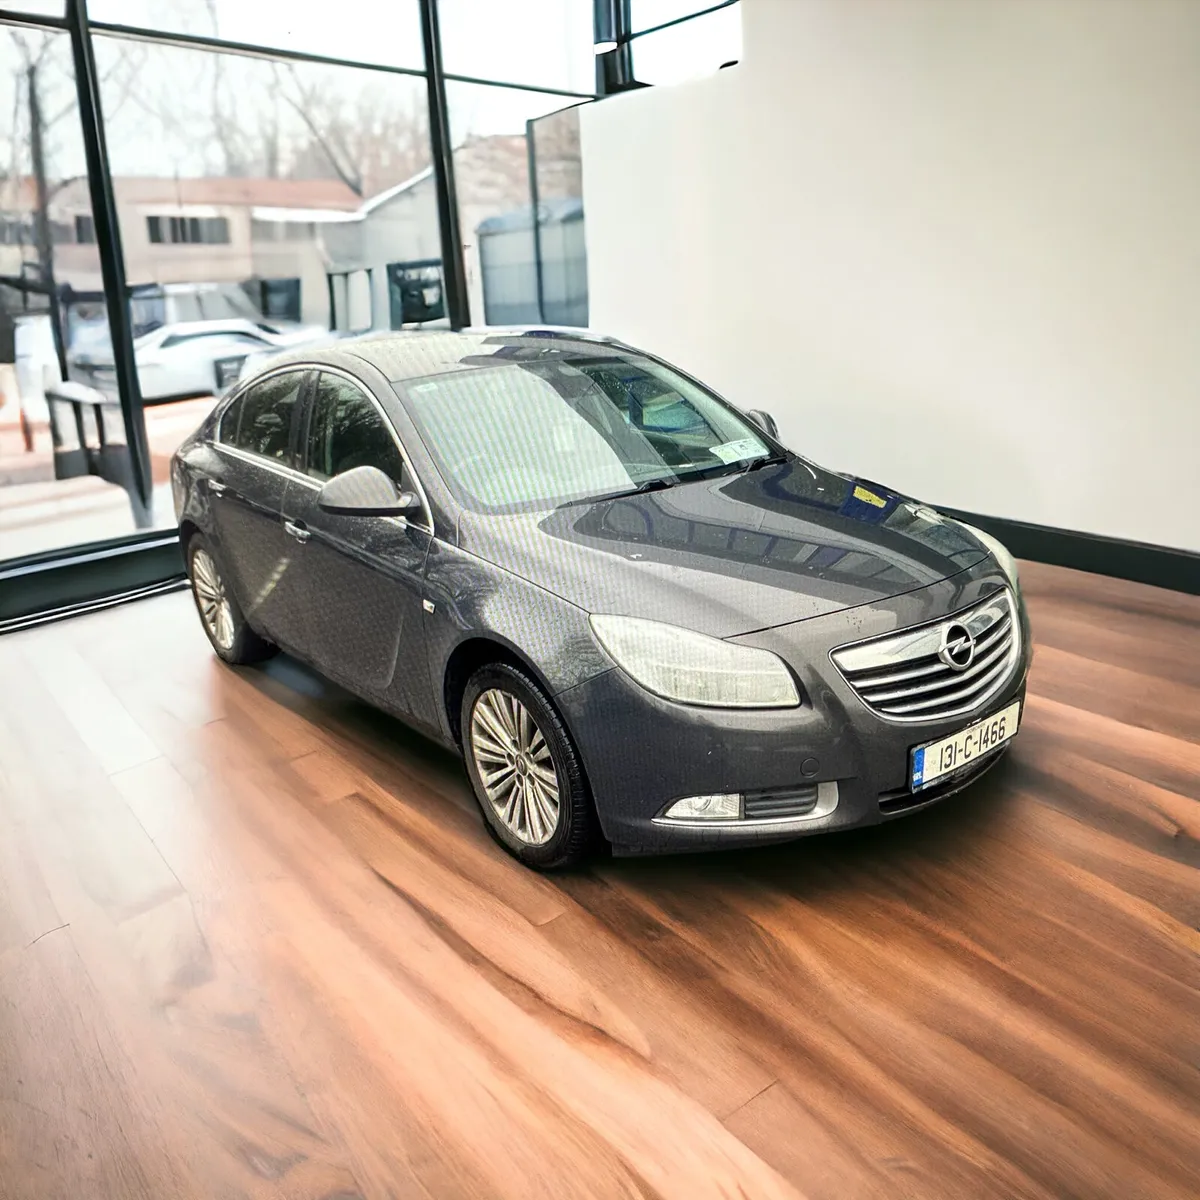 2013 Opel Insignia SE 2.0 CDTi